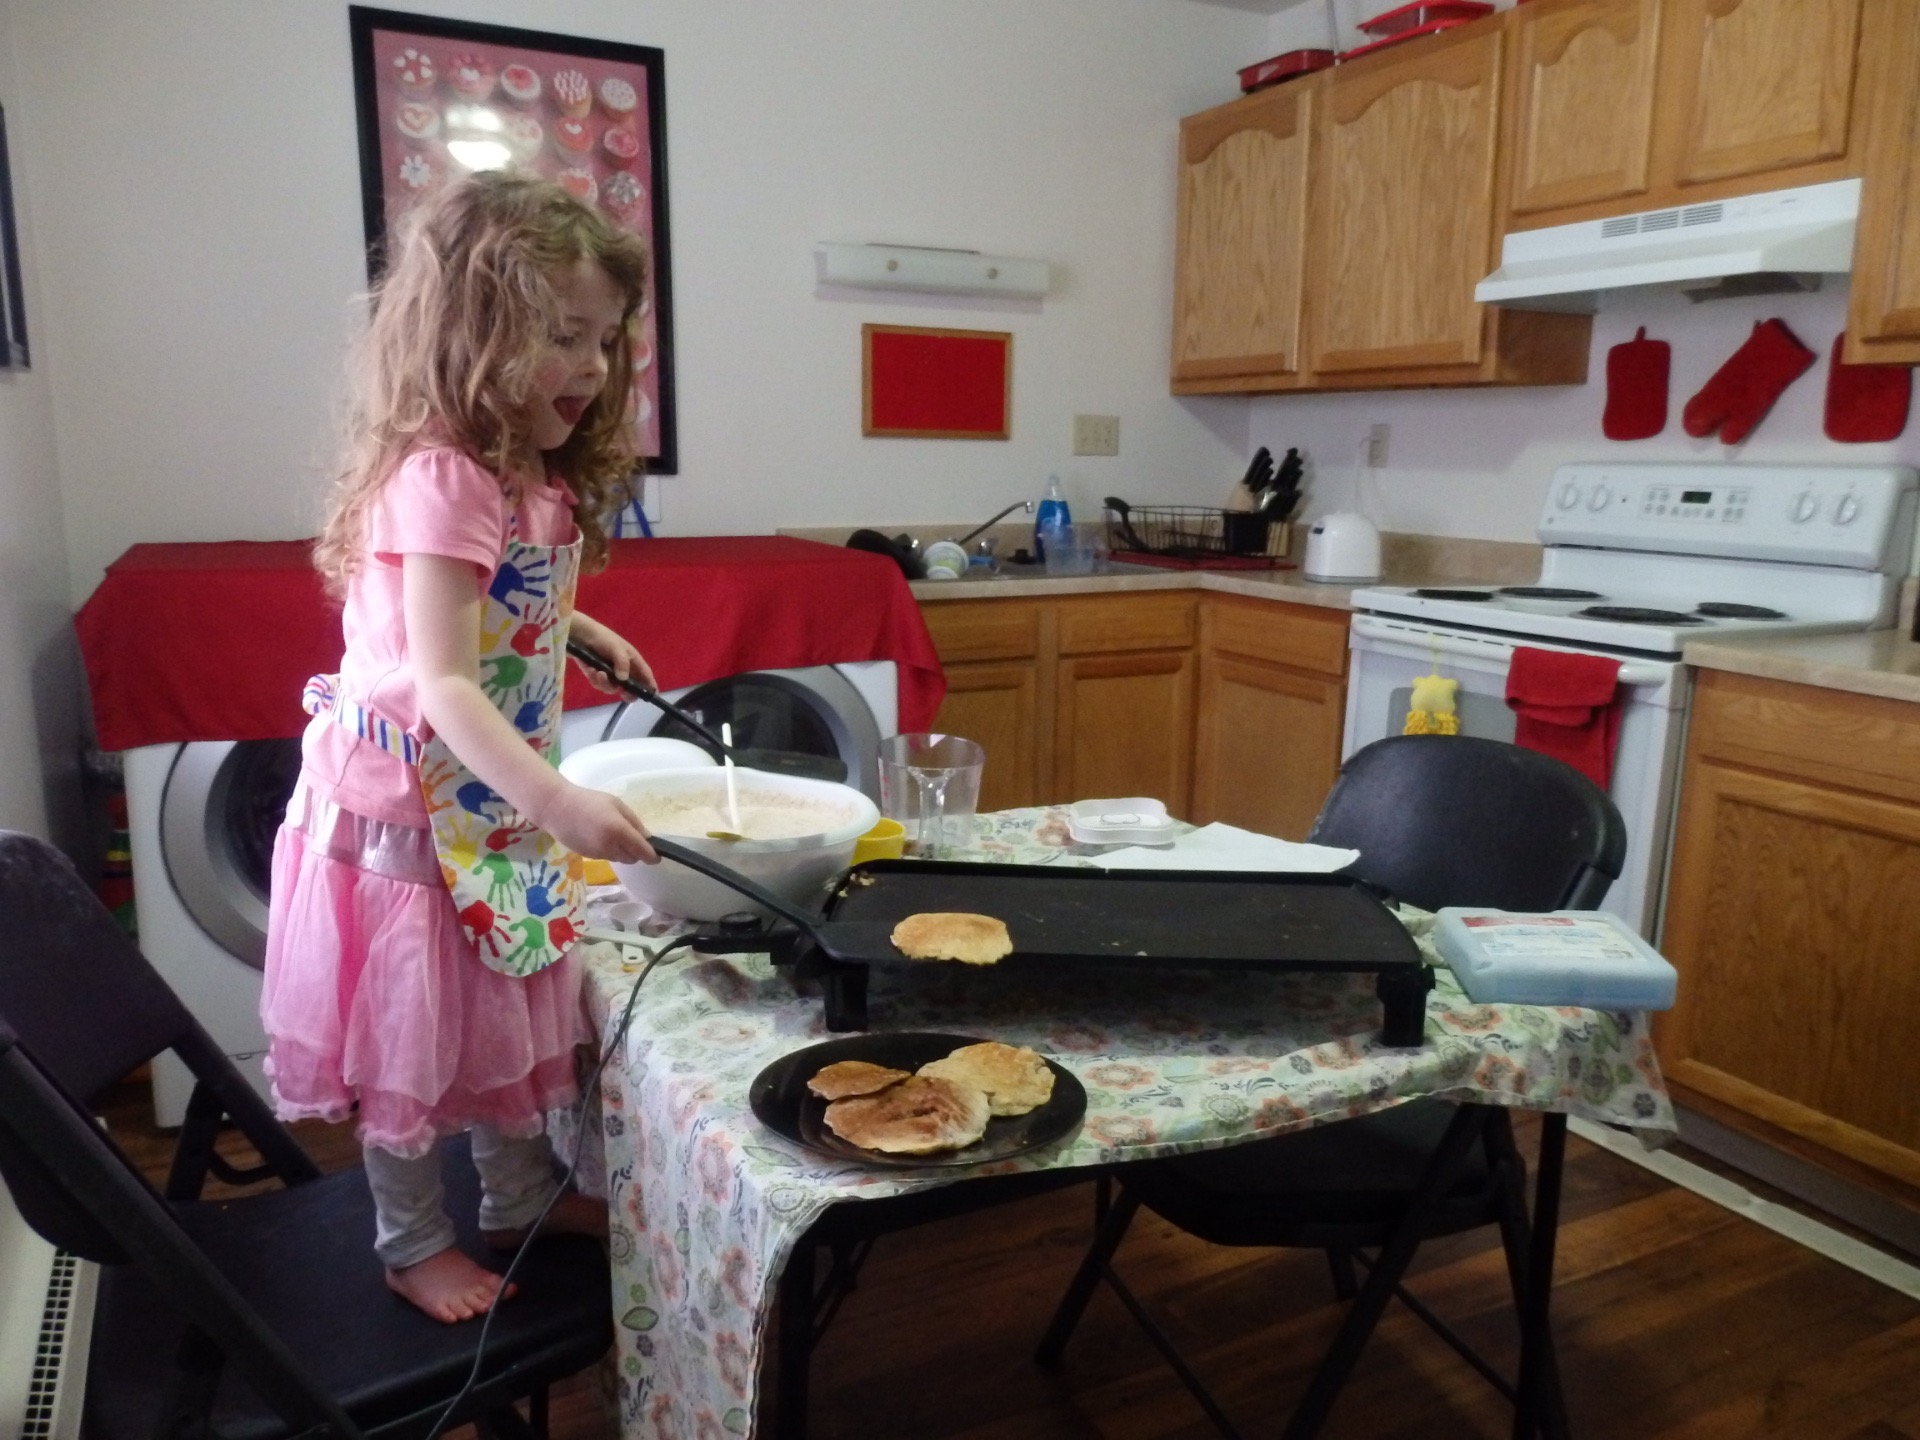 Heidi making pancakes